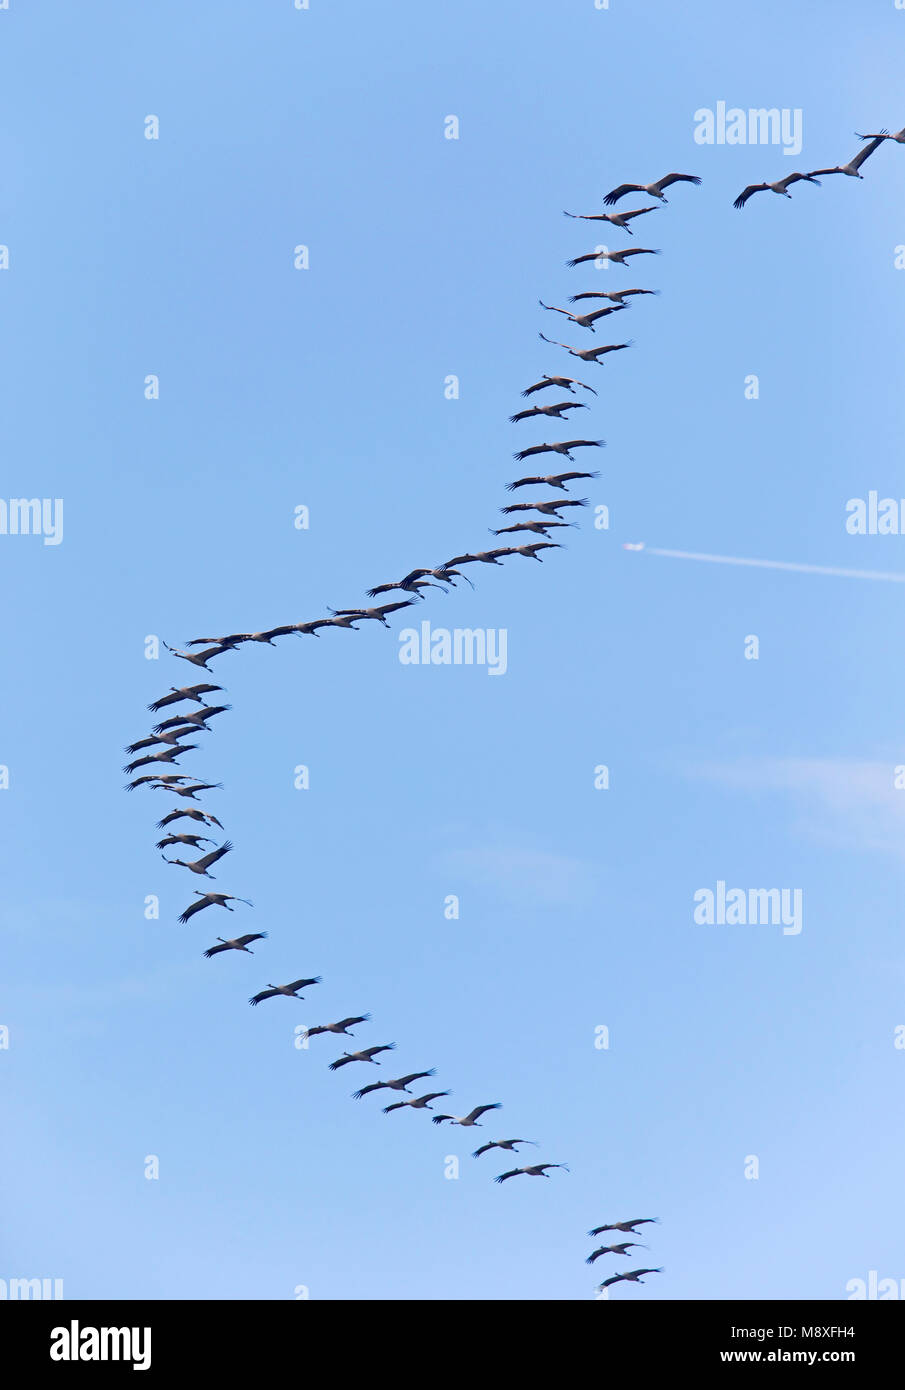 Vliegende trekkende groep Kraanvogels;battant bande migratrice de grues cendrées Banque D'Images